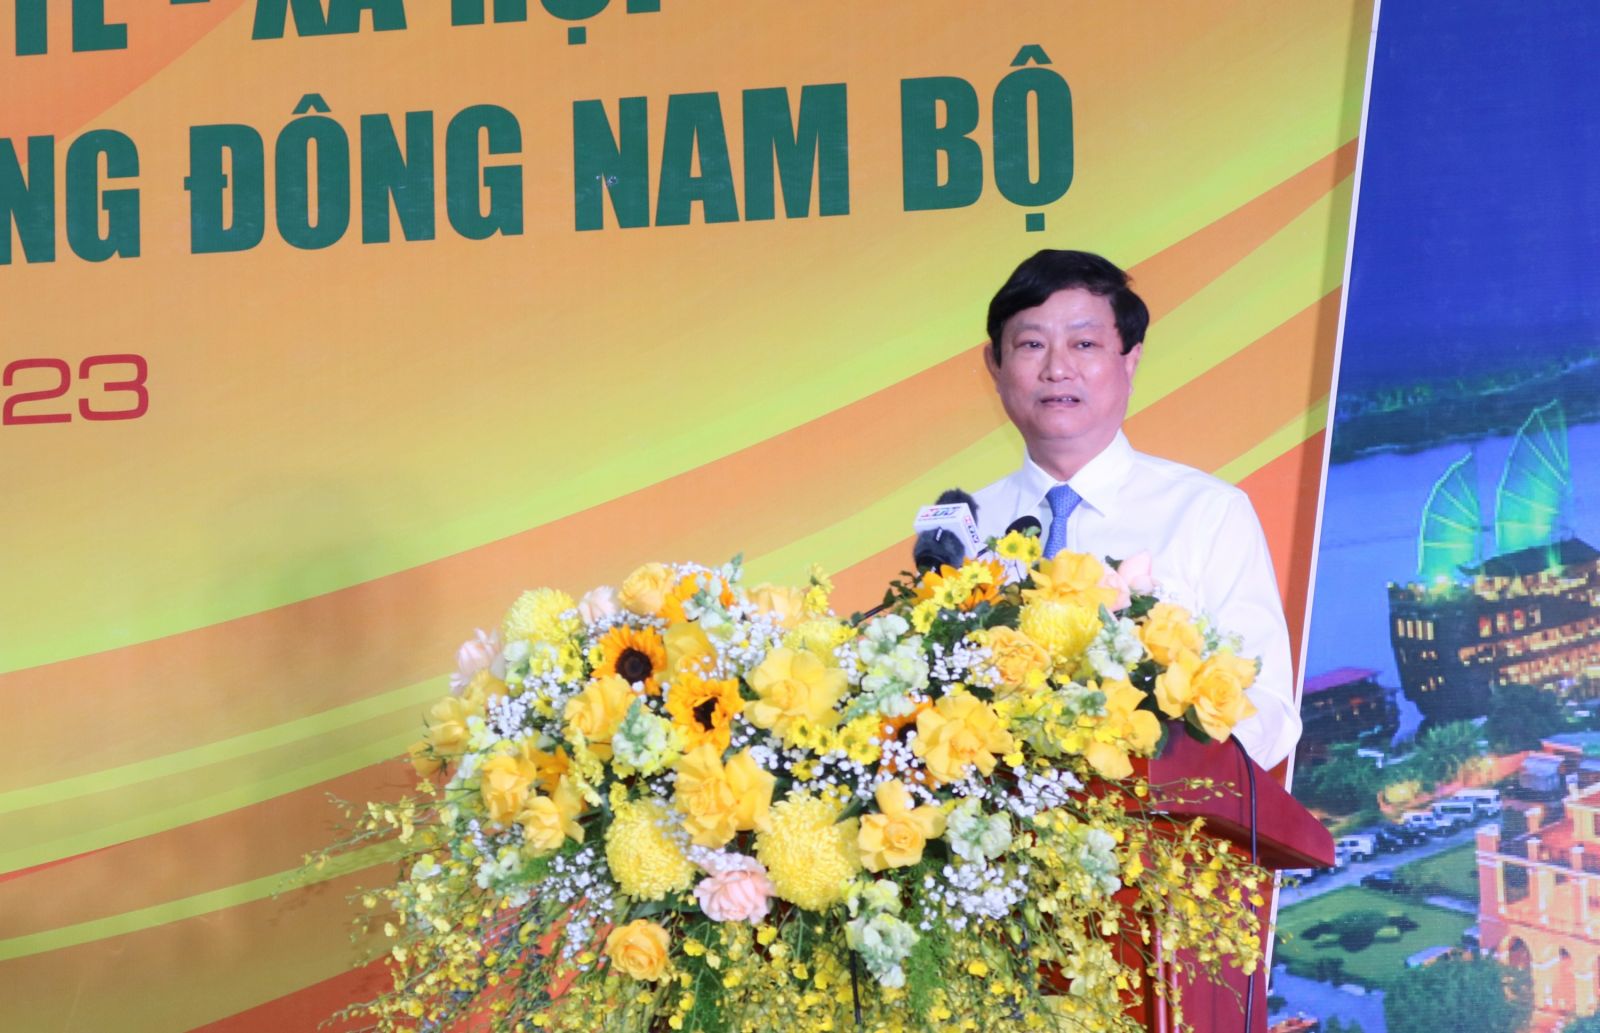 Phó Bí thư Tỉnh ủy, Chủ tịch UBND tỉnh Bình Dương Võ Văn Minh phát biểu về kết nối vùng để phát triển kinh tế - xã hội